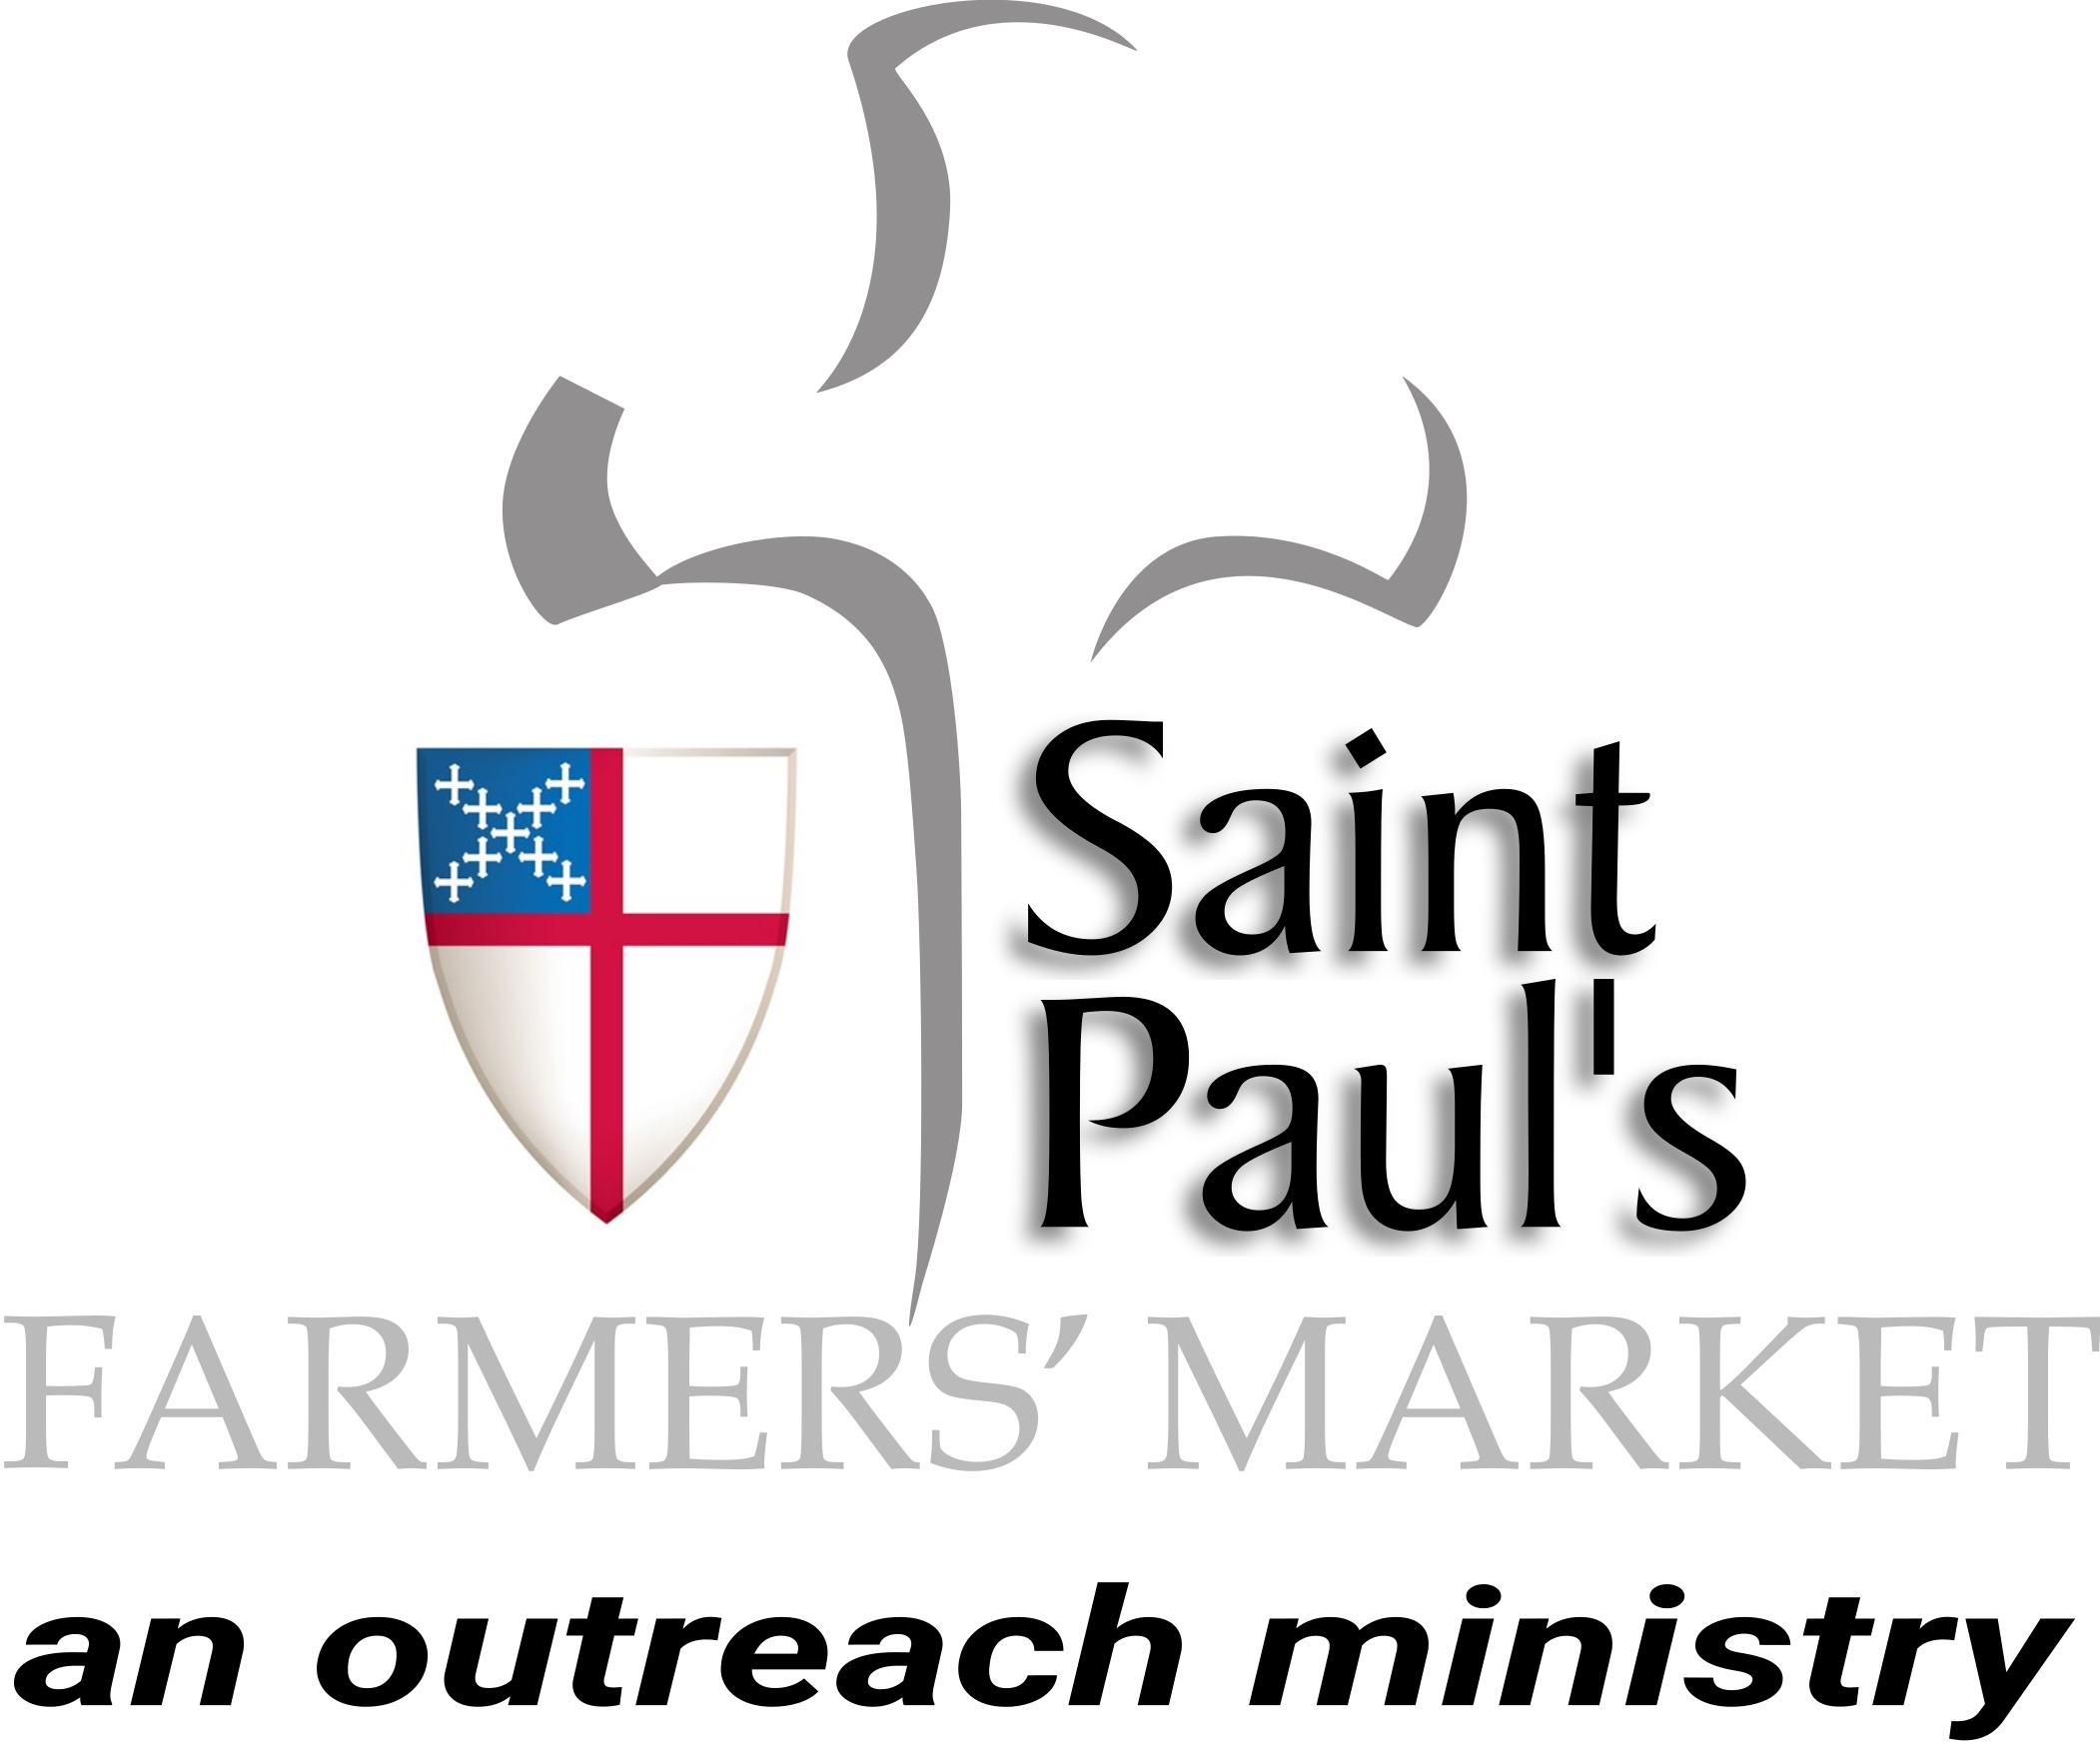 Farmers' market logo